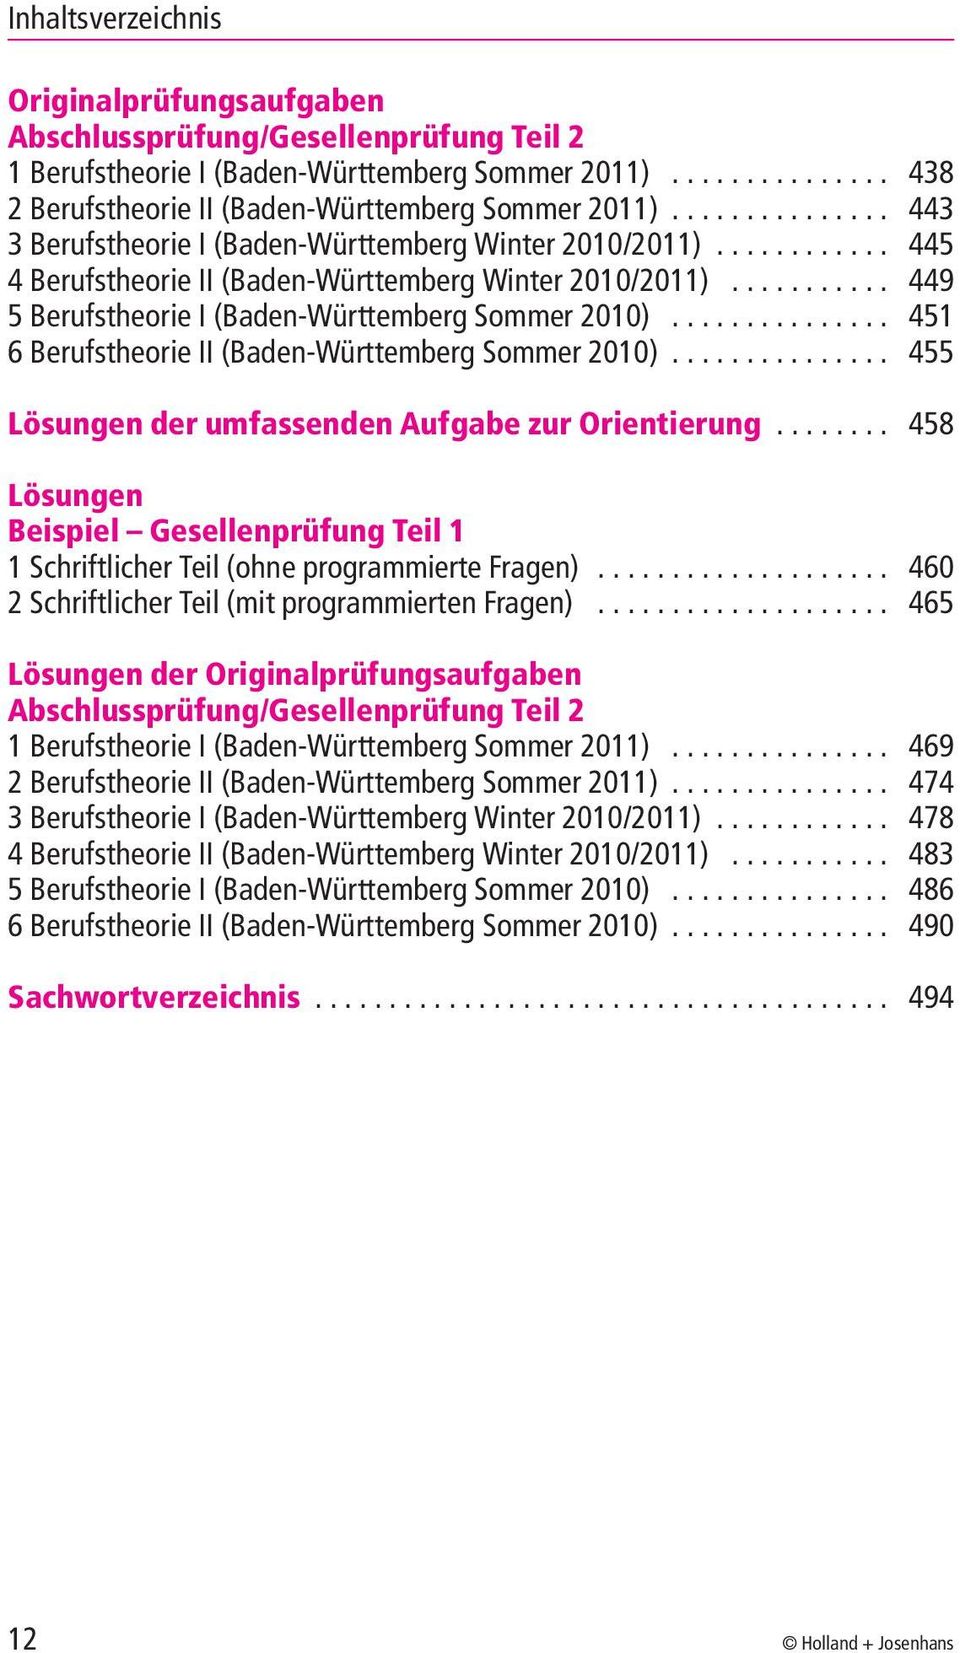 .. 451 6BerufstheorieII(Baden-WürttembergSommer2010)... 455 Lösungen der umfassenden Aufgabe zur Orientierung... 458 Lösungen Beispiel Gesellenprüfung Teil 1 1SchriftlicherTeil(ohneprogrammierteFragen).